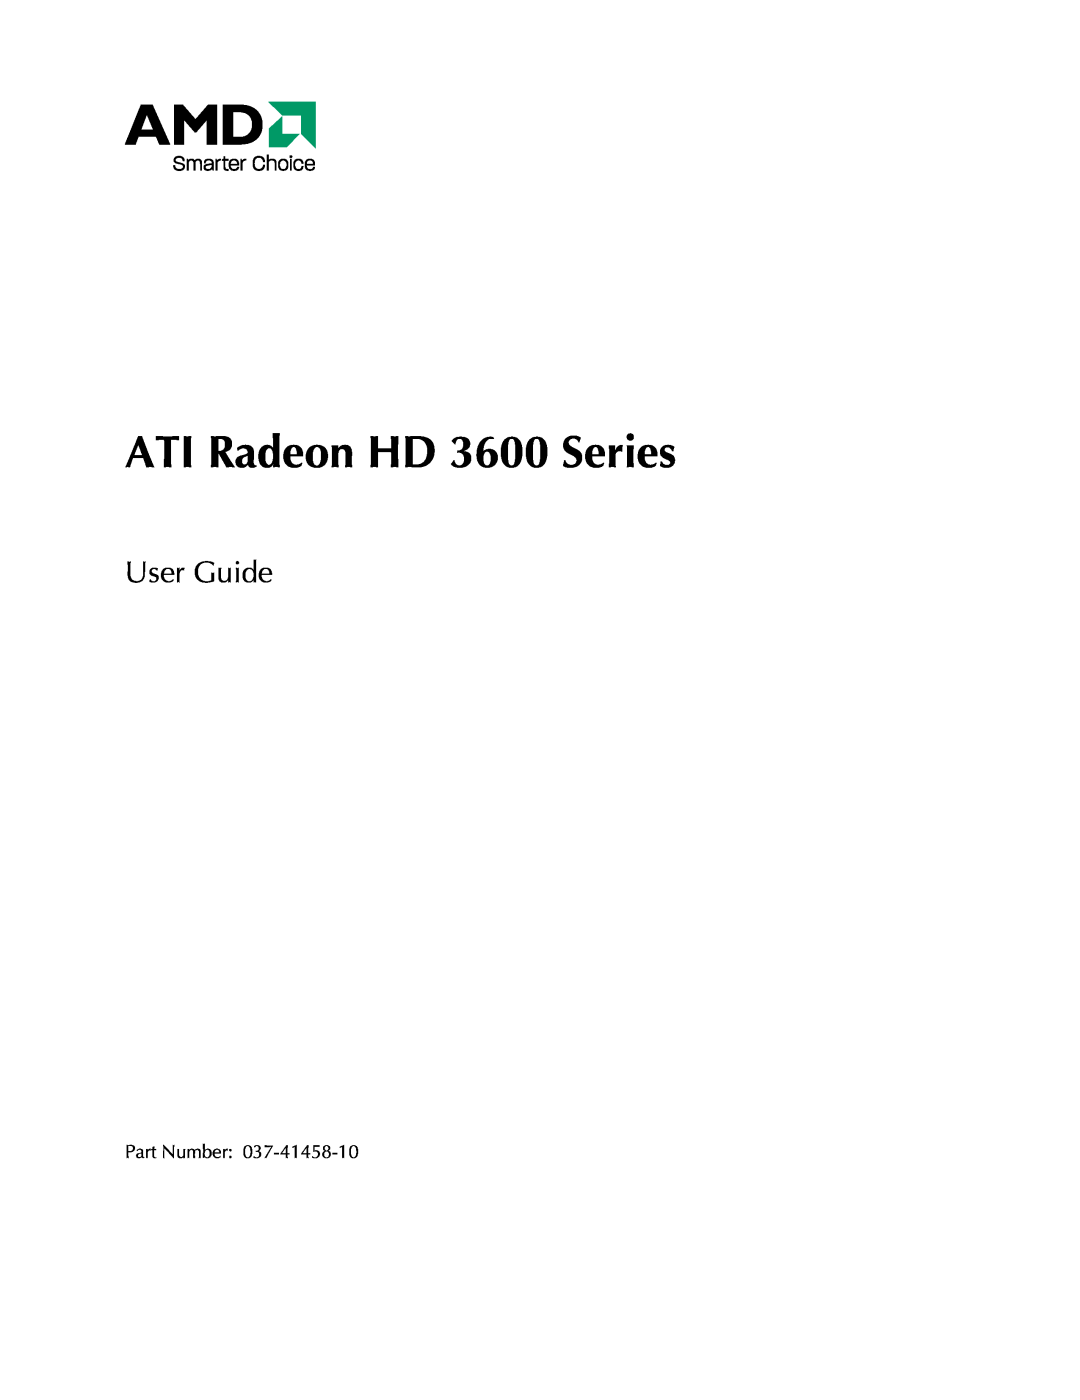 AMD manual ATI Radeon HD 3600 Series, User Guide 